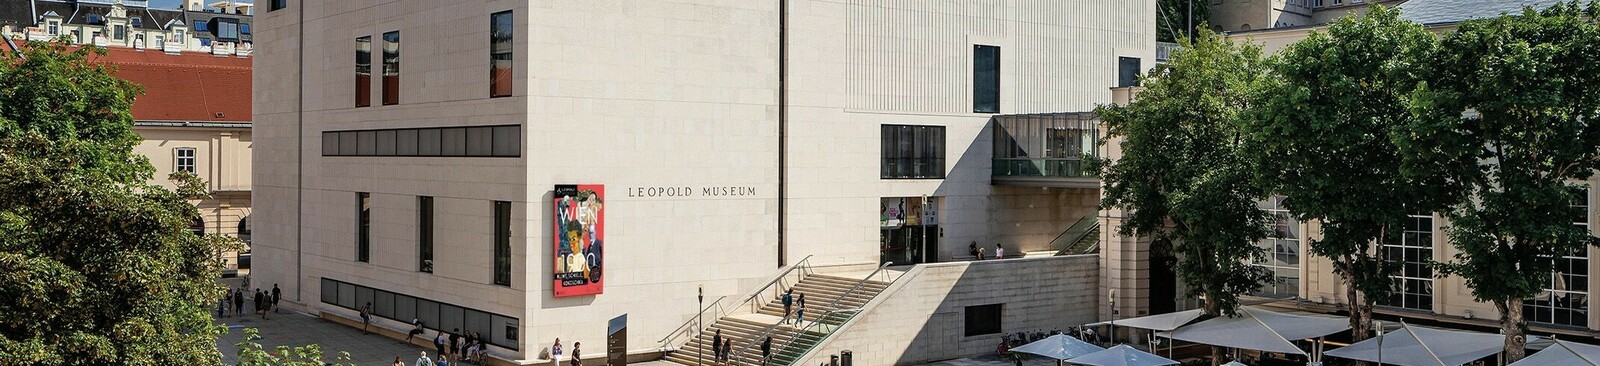 Leopold Museum Außenansicht